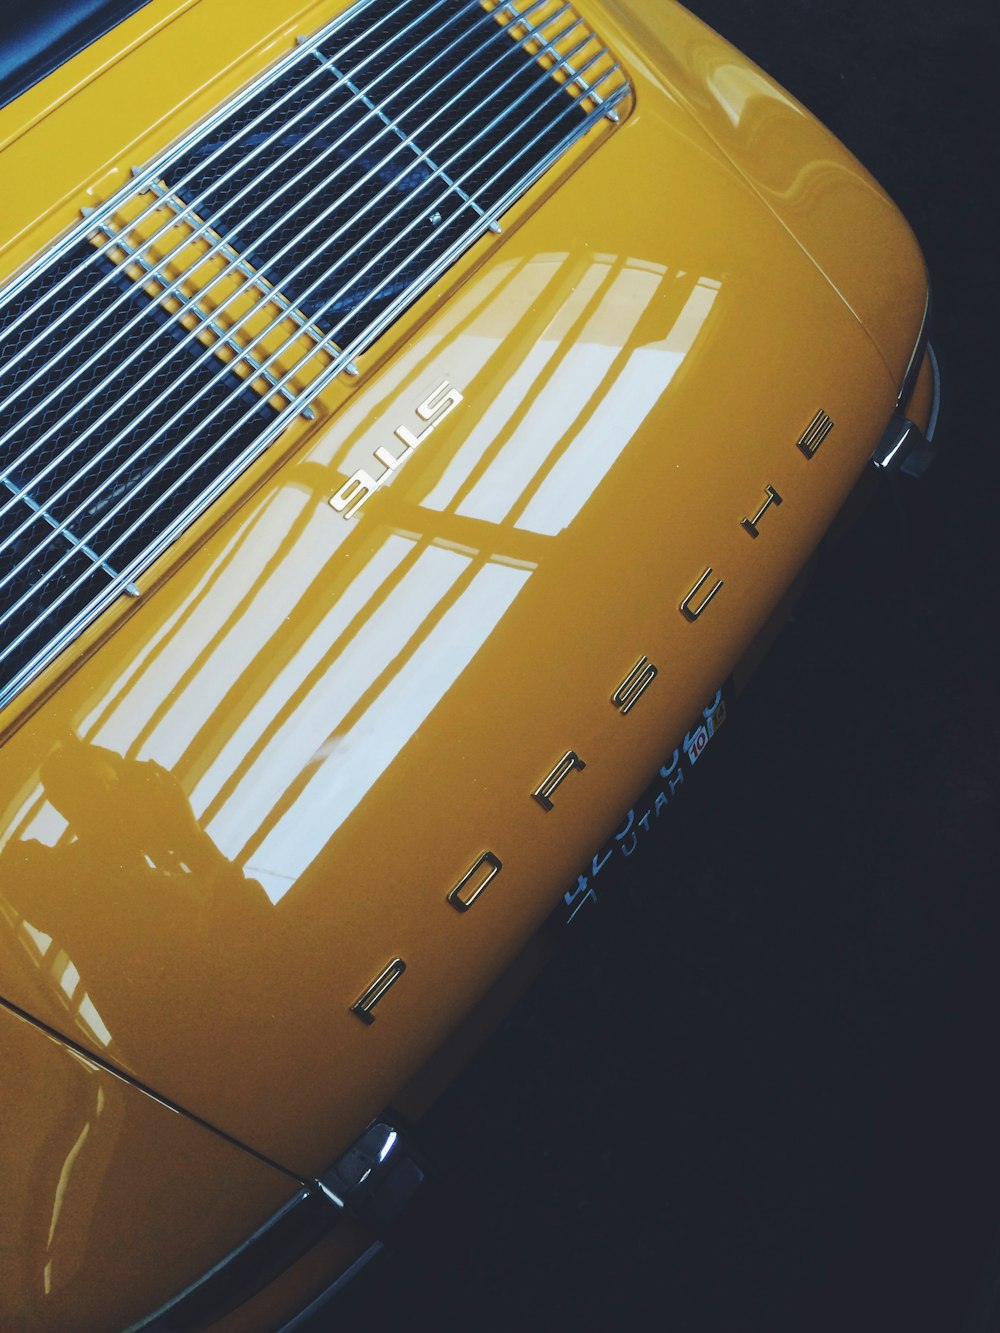 véhicule Porsche jaune et noir